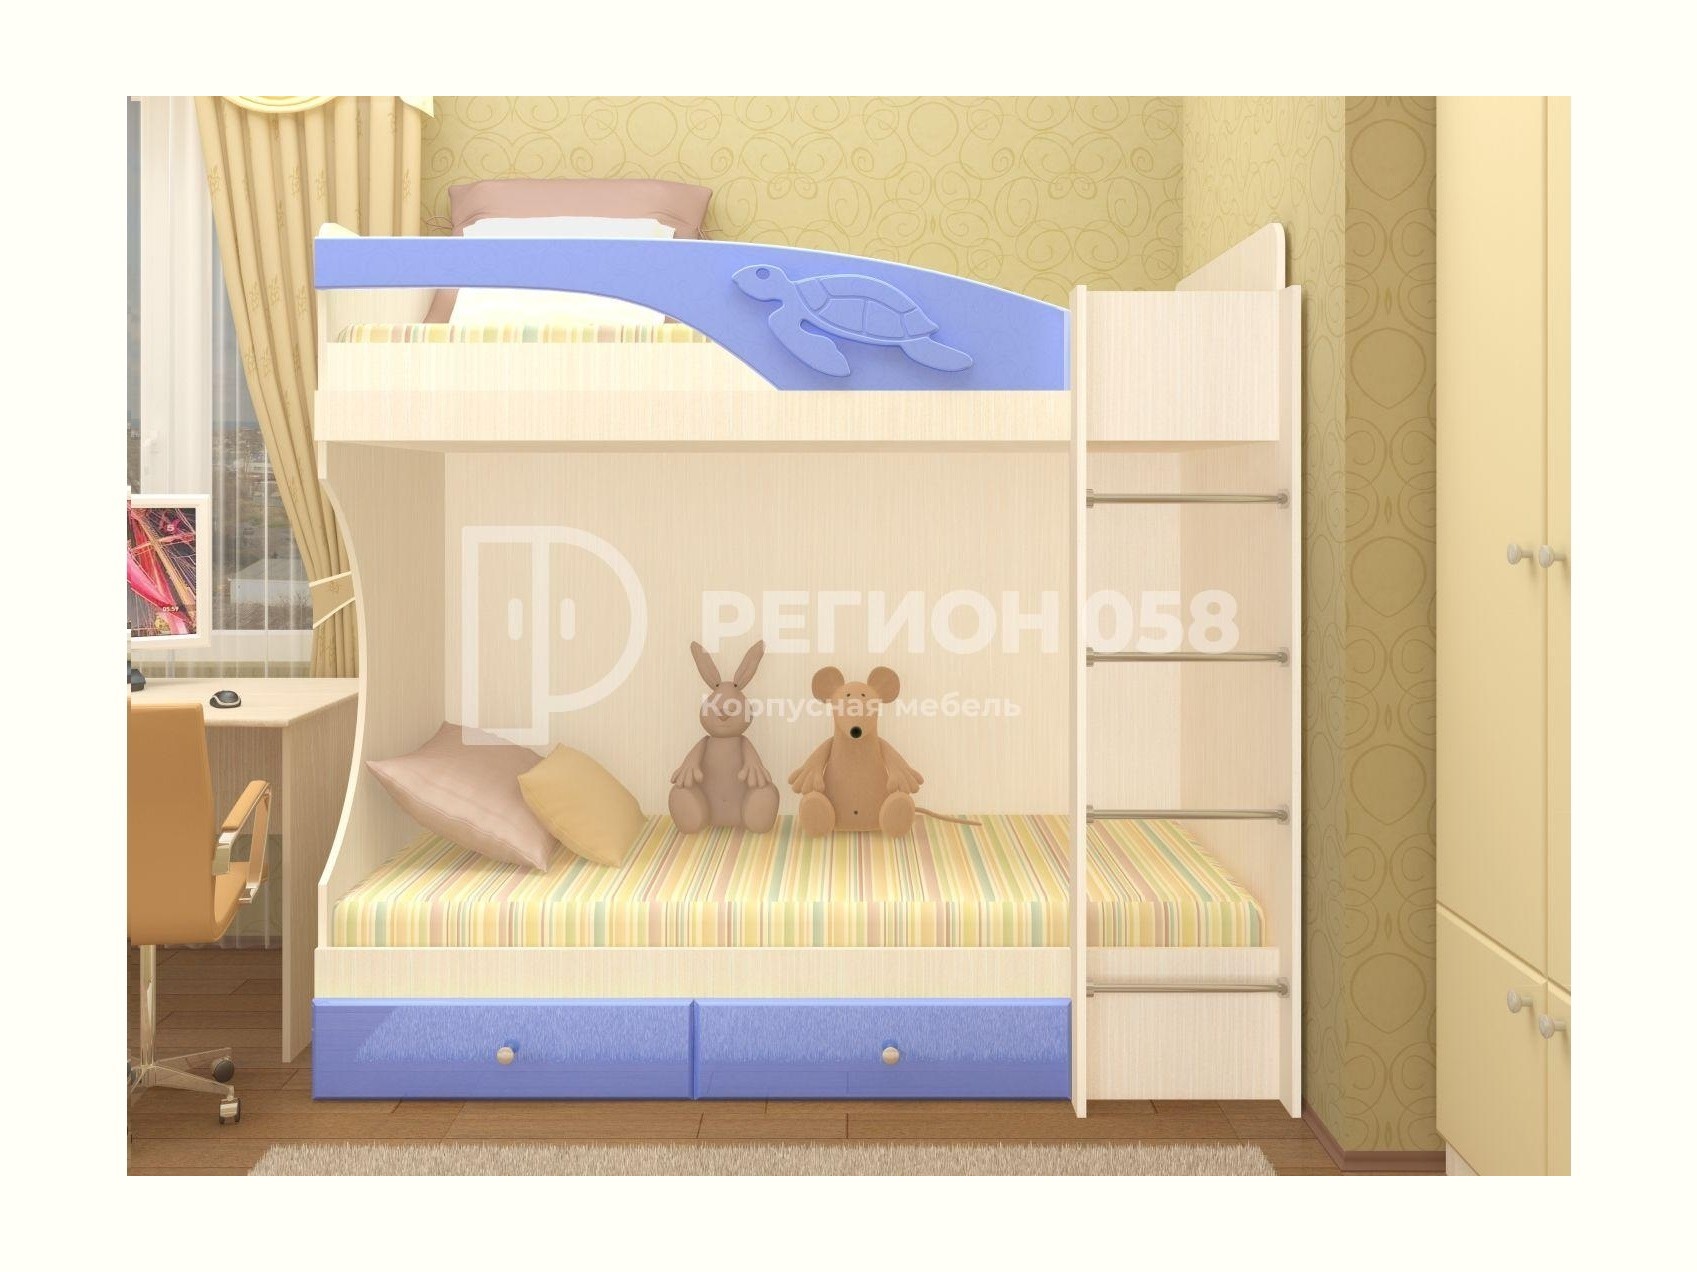 Двухъярусная кровать Бемби МДФ (фасад 3D) (Голубой металлик, шимо светлый) Бежевый двухъярусная кровать бемби 11 мдф голубой металлик ясень шимо светлый бежевый мдф лдсп